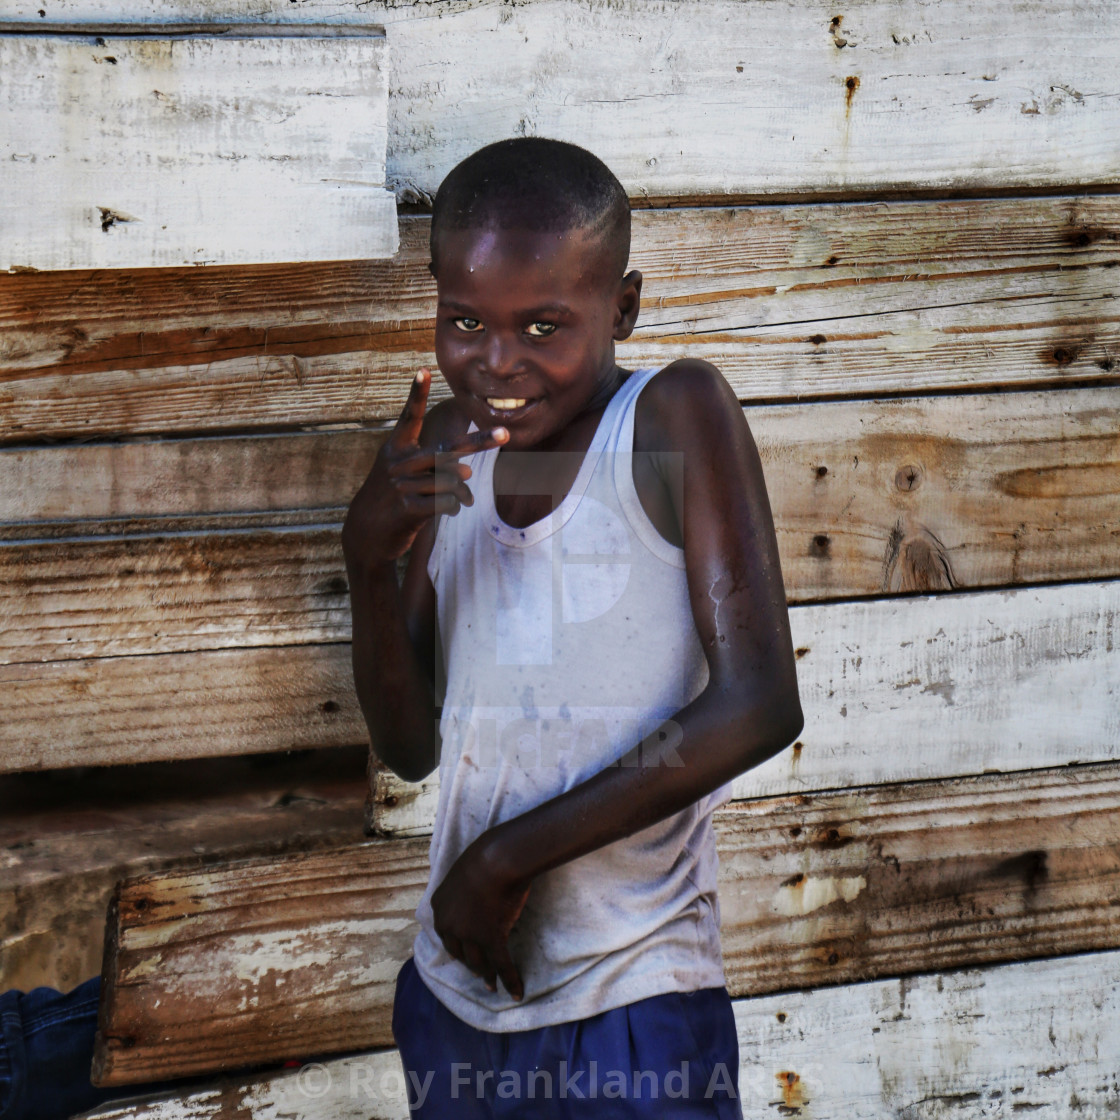 "African boy in Zanzibar" stock image